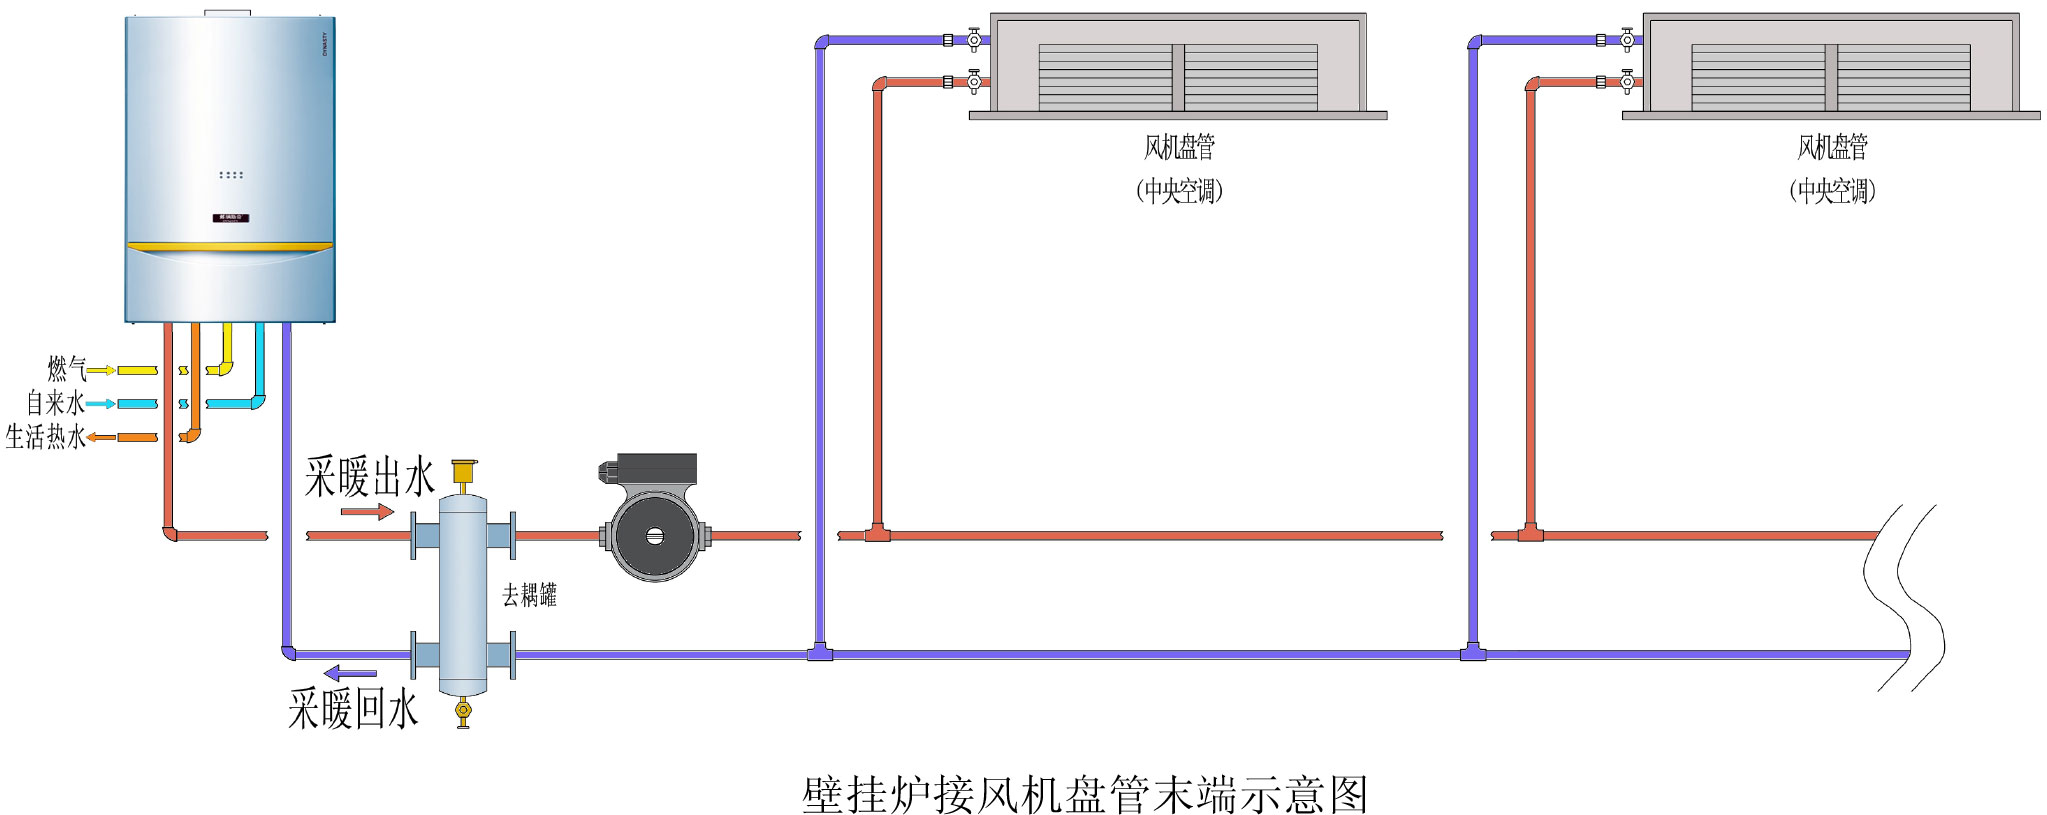 天津威能30kw原装进口冷凝壁挂炉代理公司